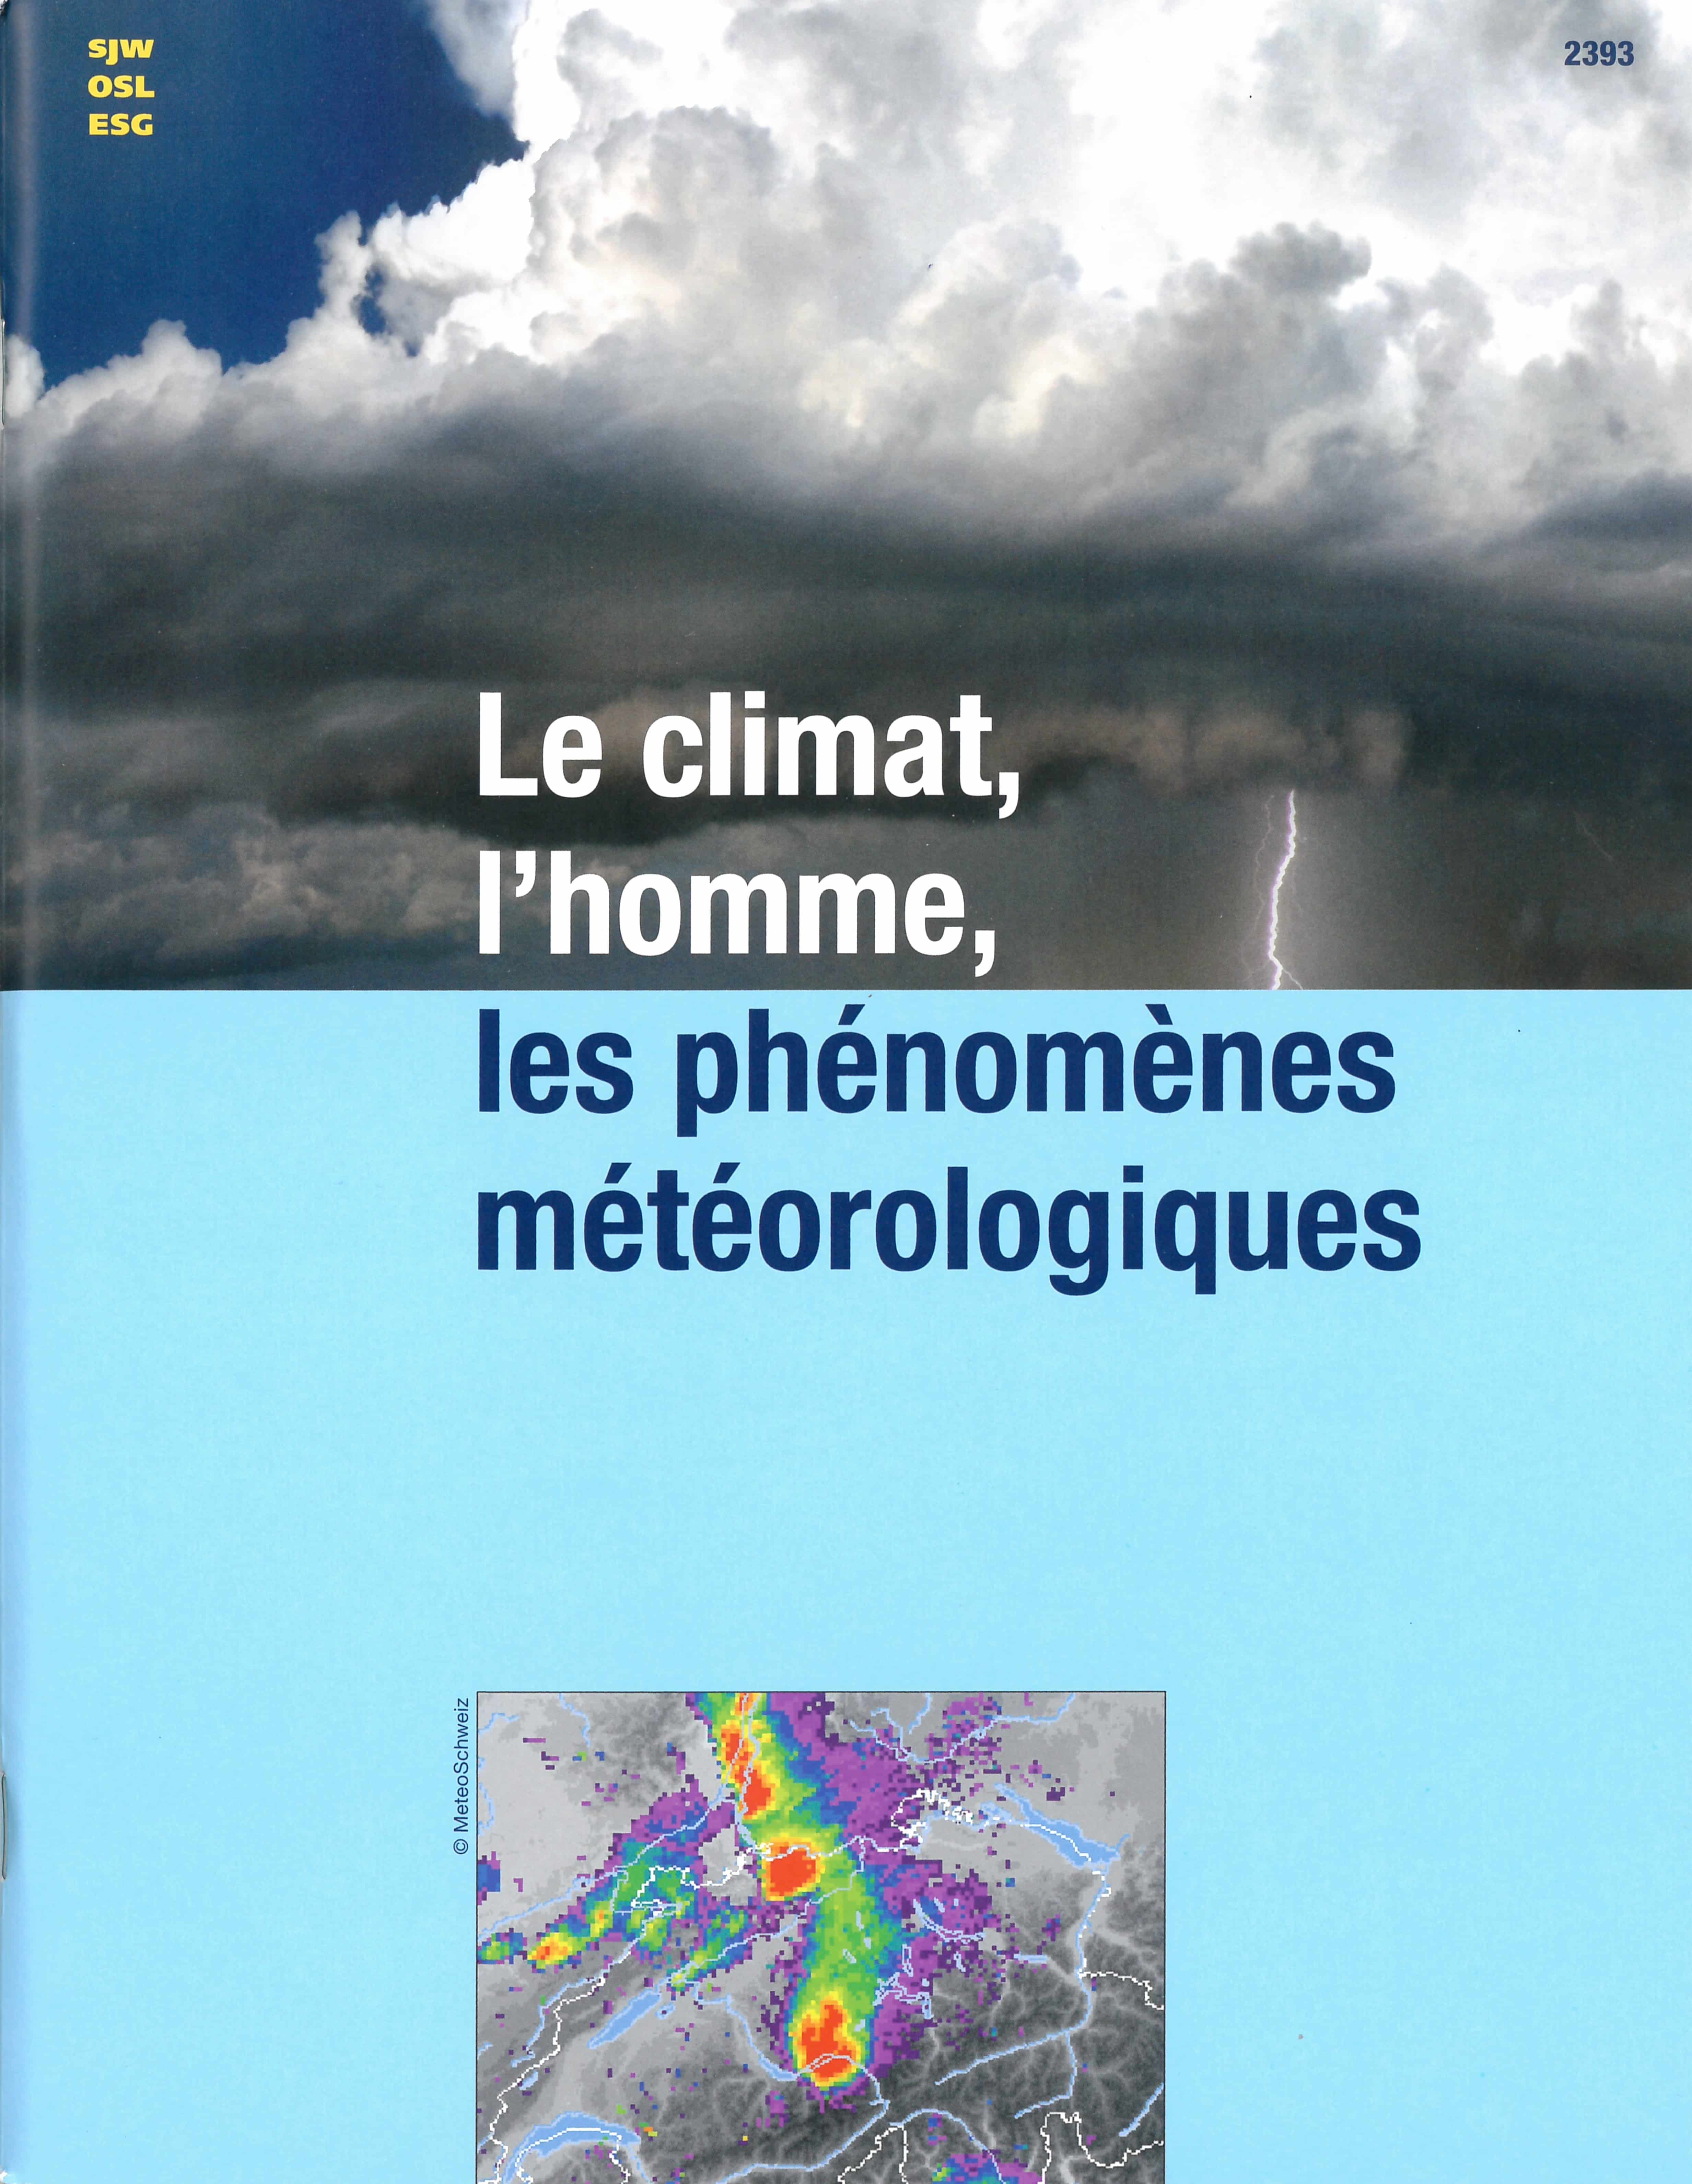 Le climat, l'homme, les phénomènes météorologiques, un livre d’éditions de l'OSL, nature, saison